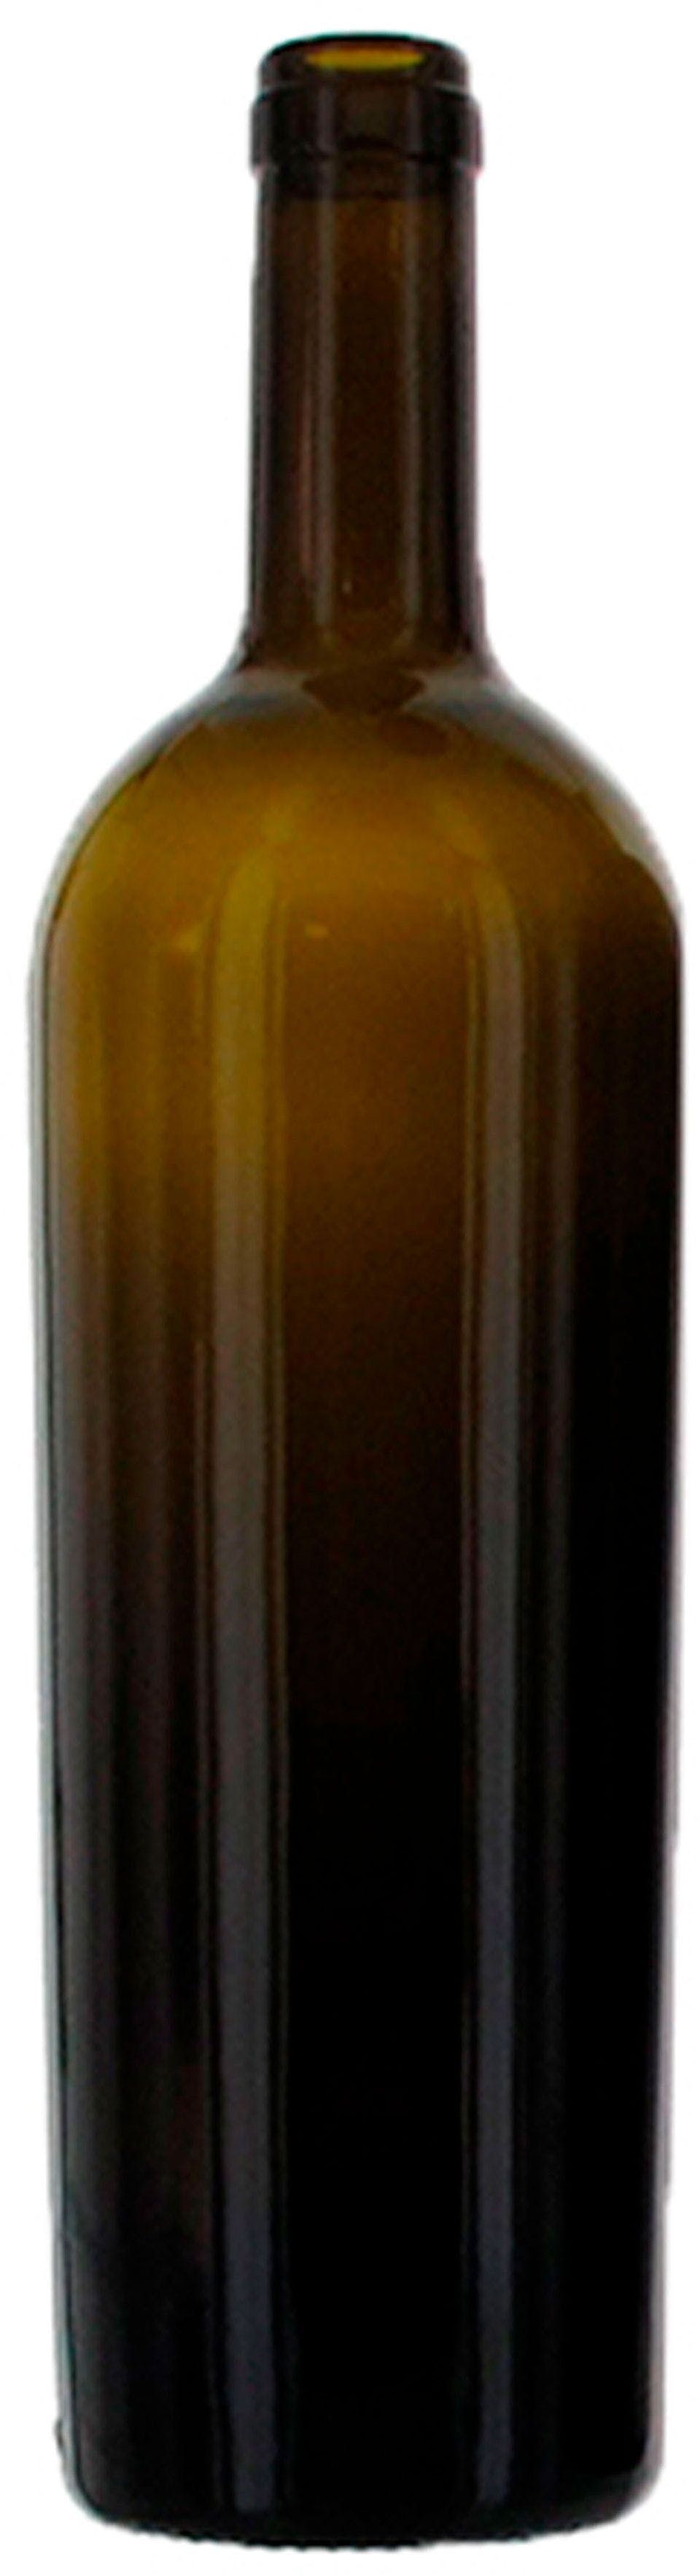 Bottiglia bordolese   VENUS 750 ml BG-Sughero